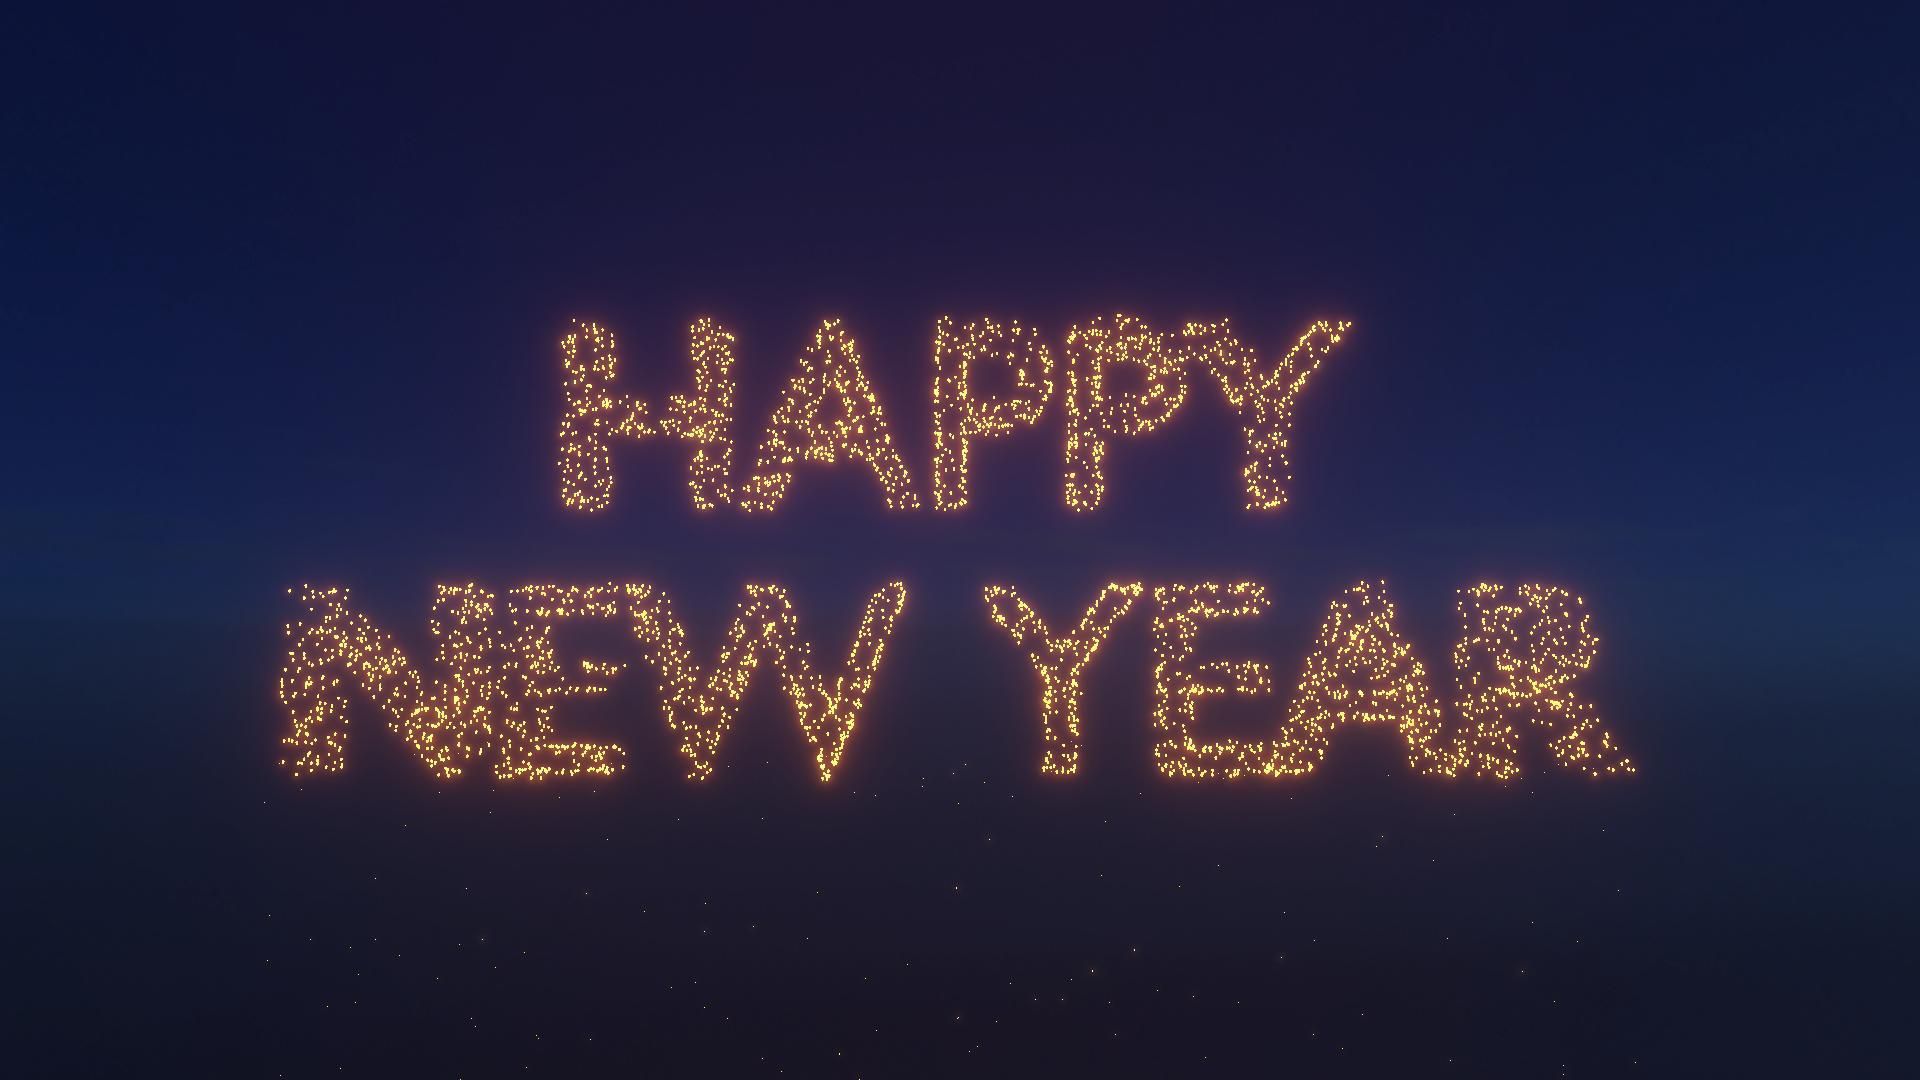 Die Wünsche der Nutzer verwandeln sich in der WE ARE WISHES™ Animation in Laternen und bilden dann eine abschließende Botschaft zu dem Thema Happy New Year.